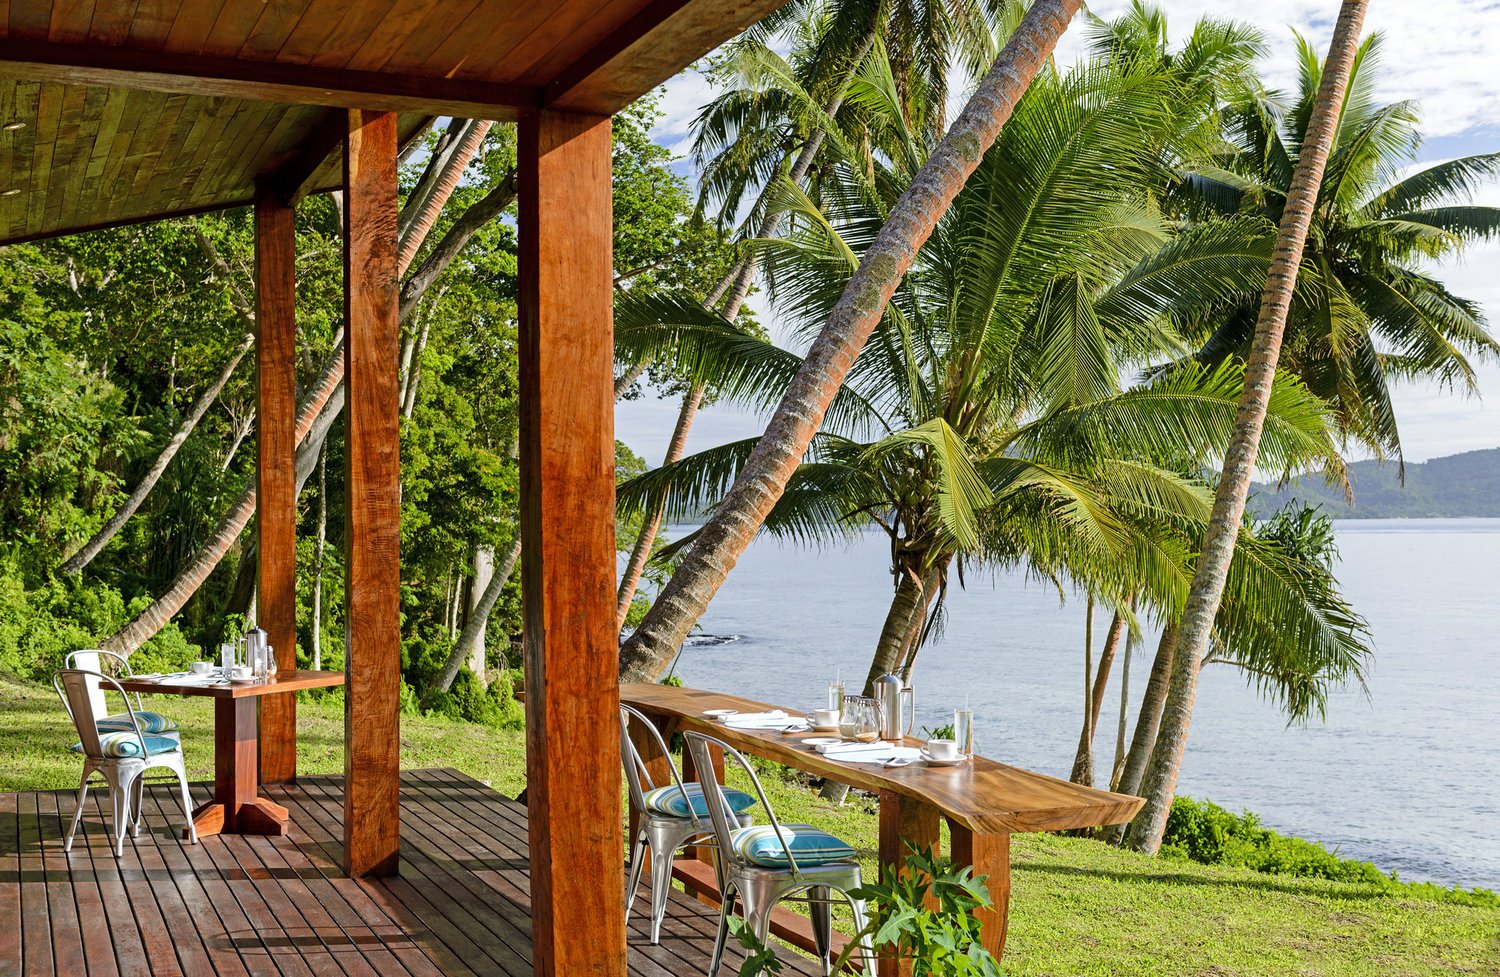 Dining+at+The+Remote+Resort+Fiji+Islands+Breakfast+Bar.jpg